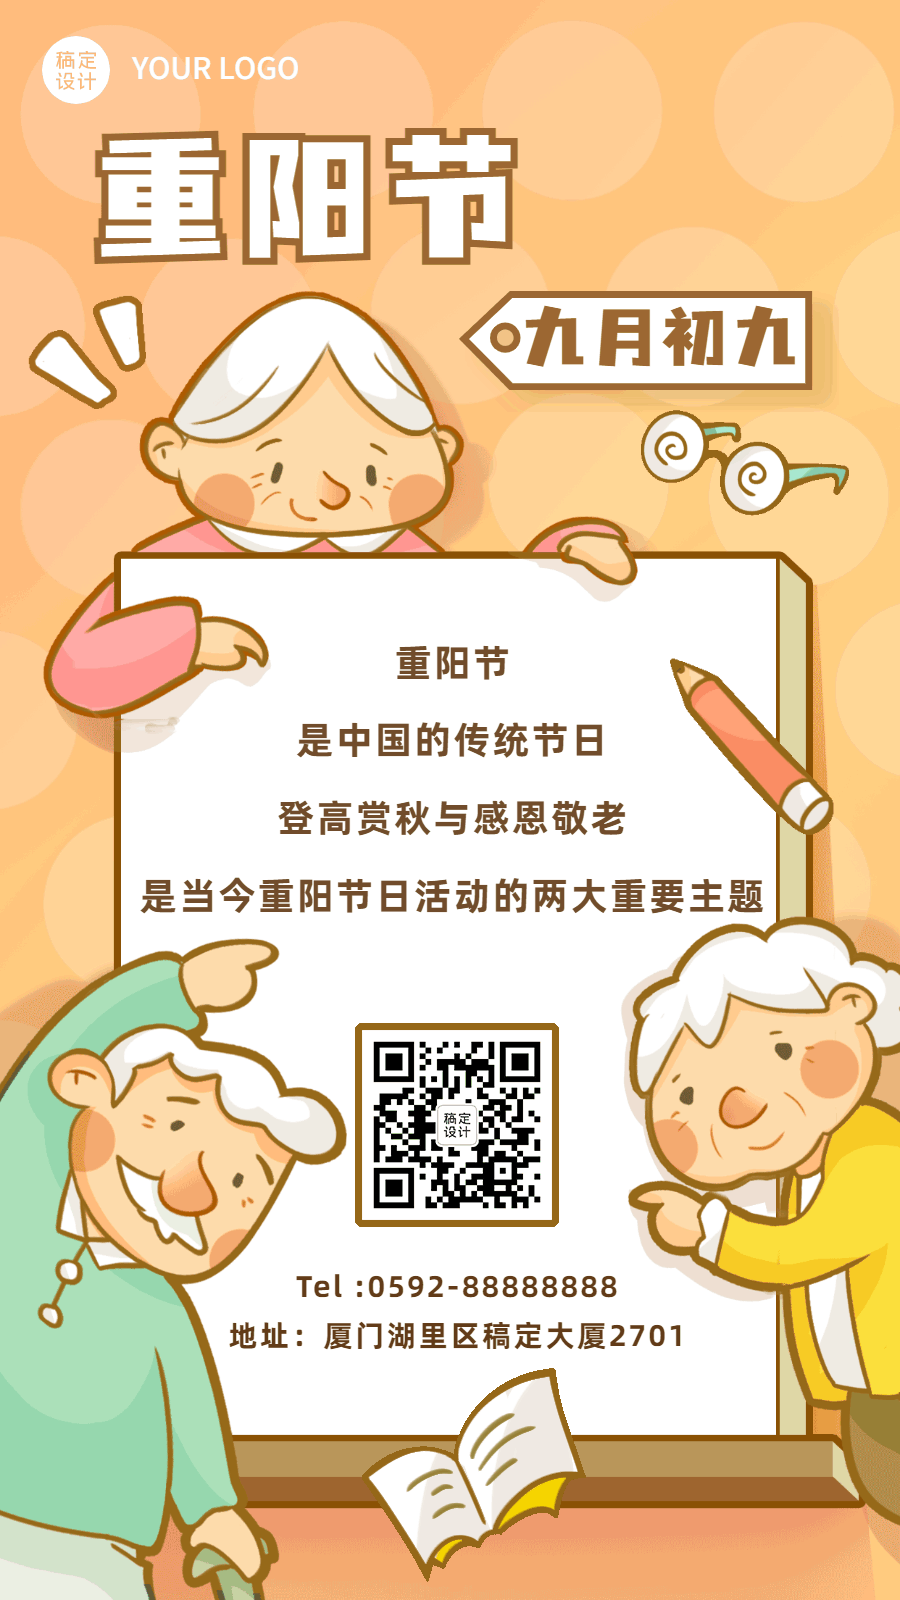 九九重阳节日科普GIF动态海报